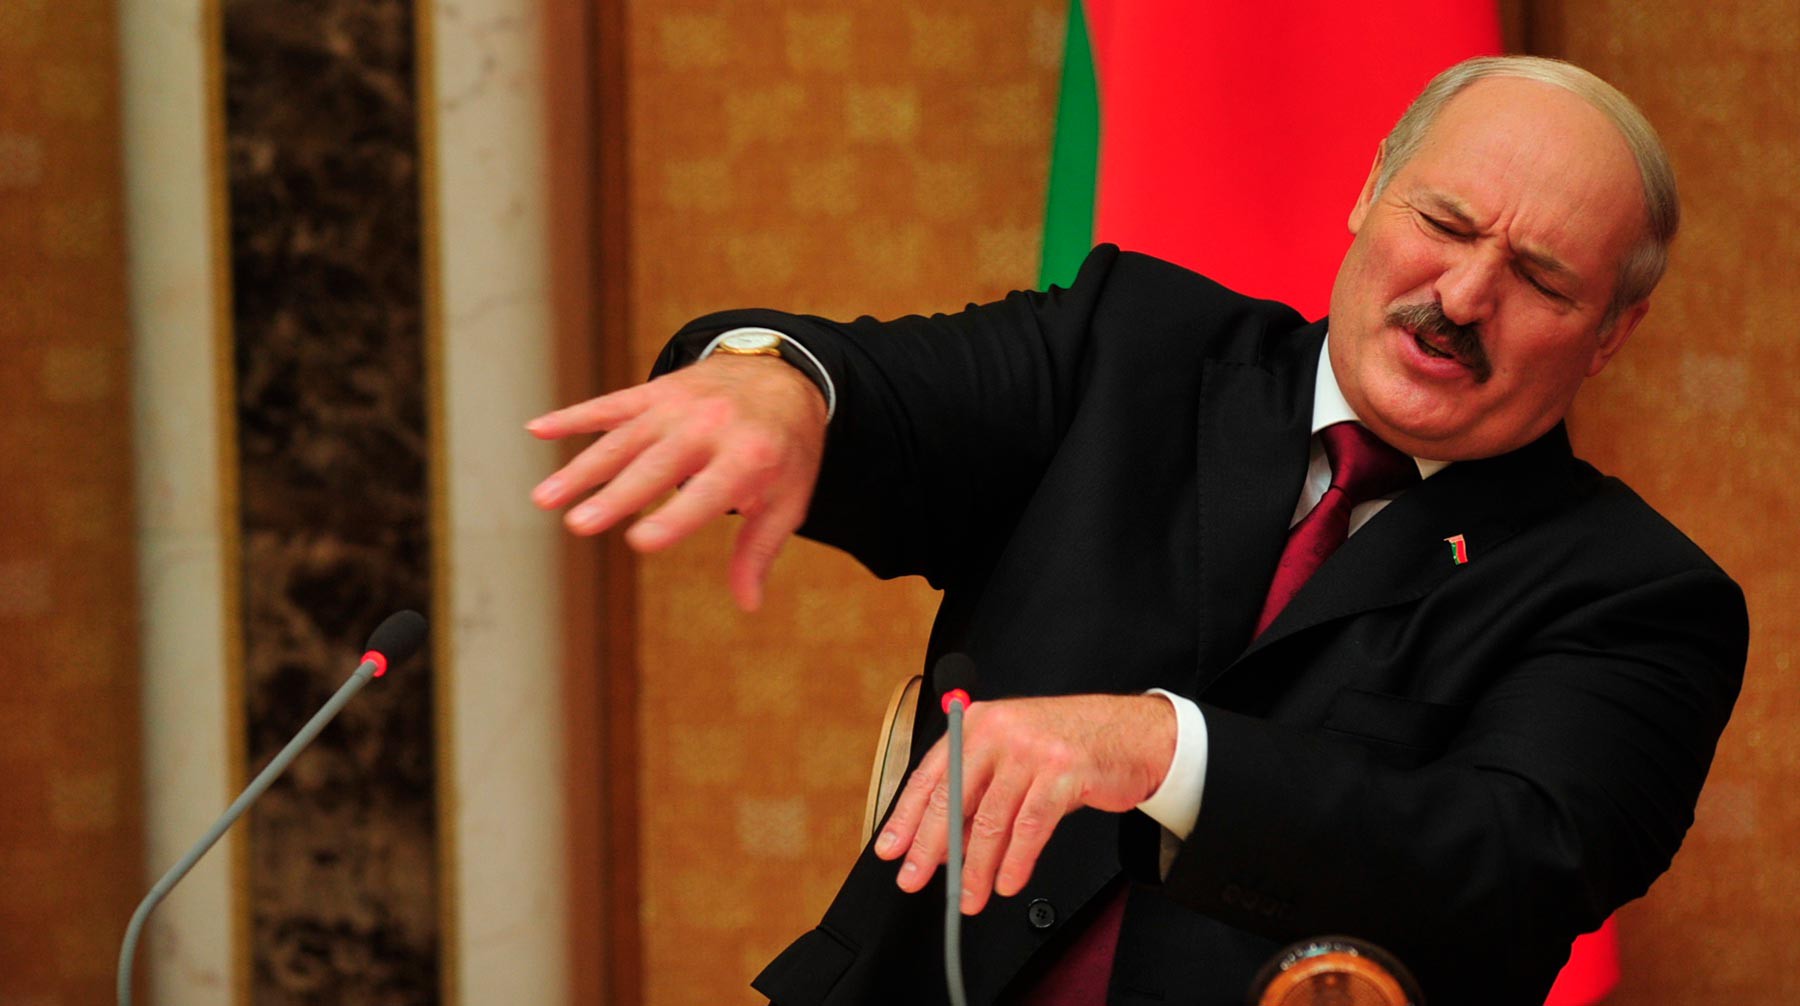 Dailystorm - ЕС ввел санкции против Лукашенко и расширил черный список по Белоруссии